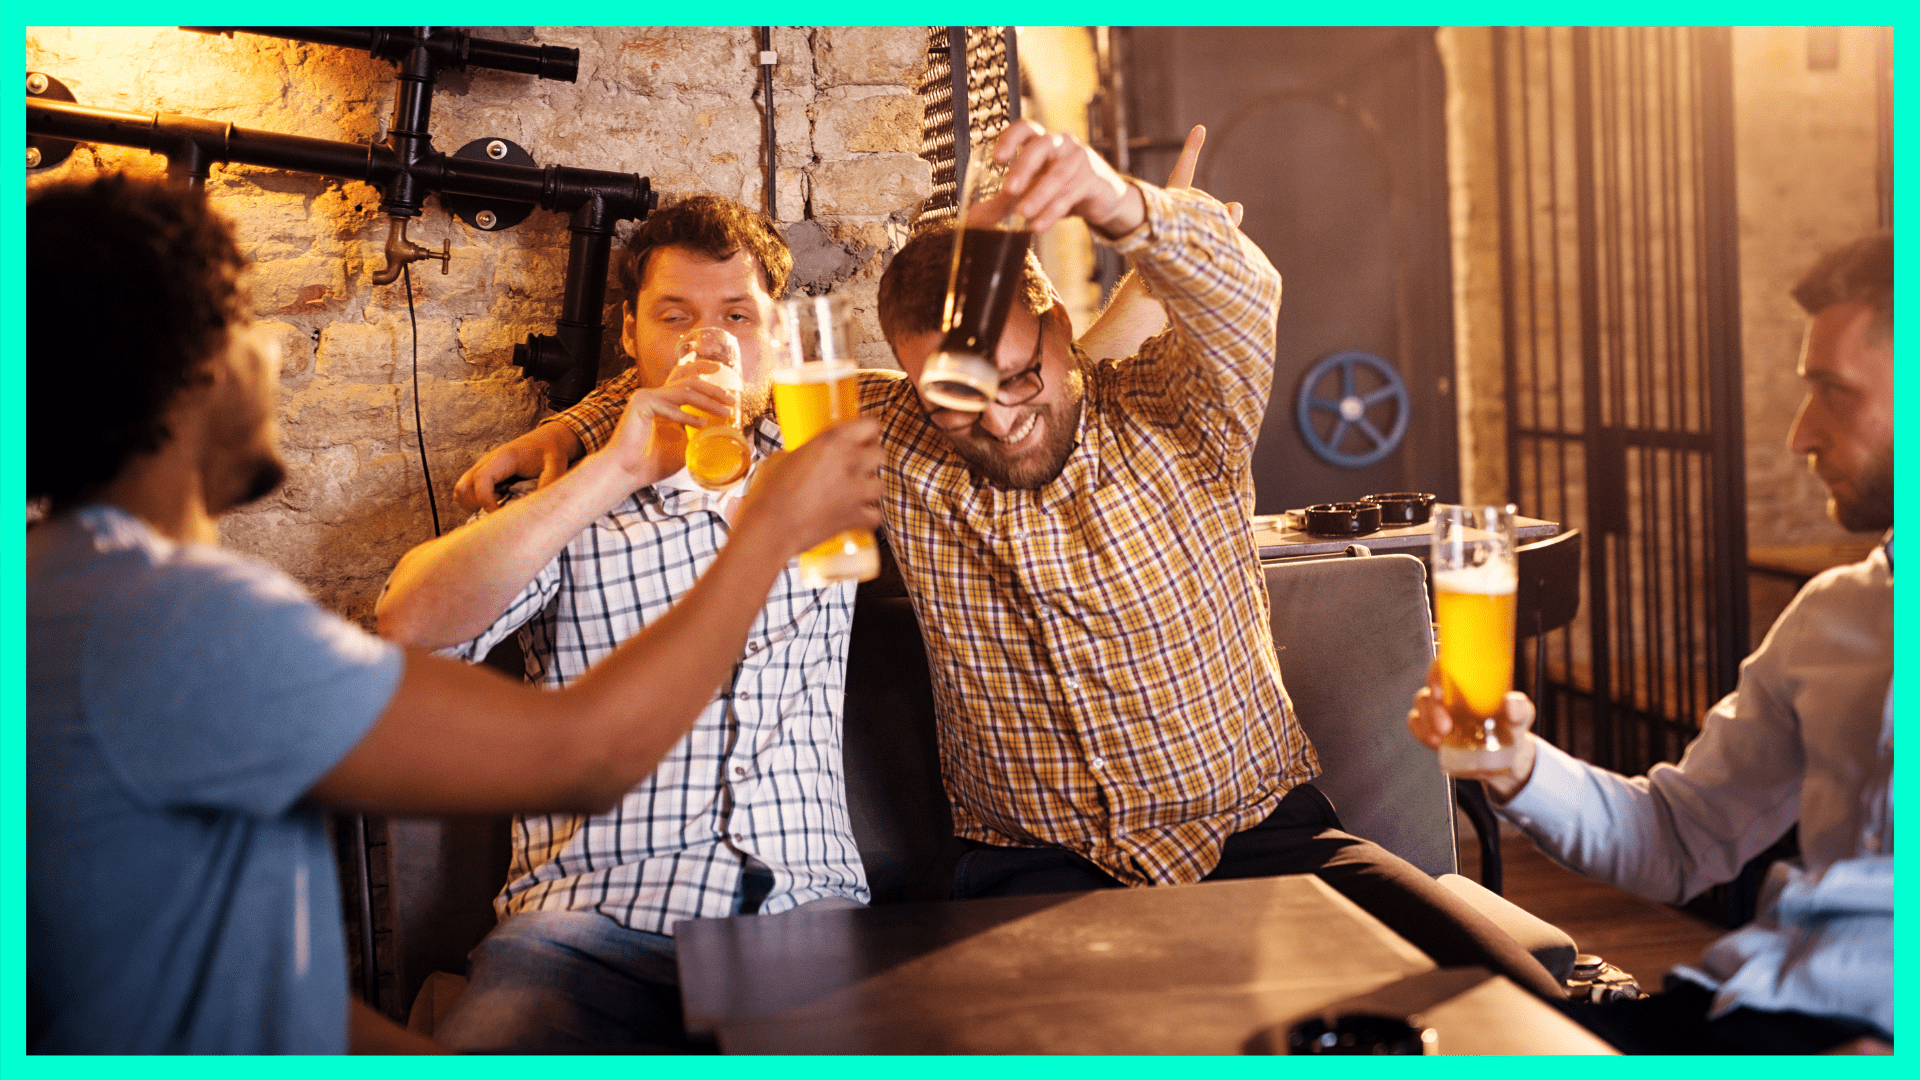 group of men drunk on beer